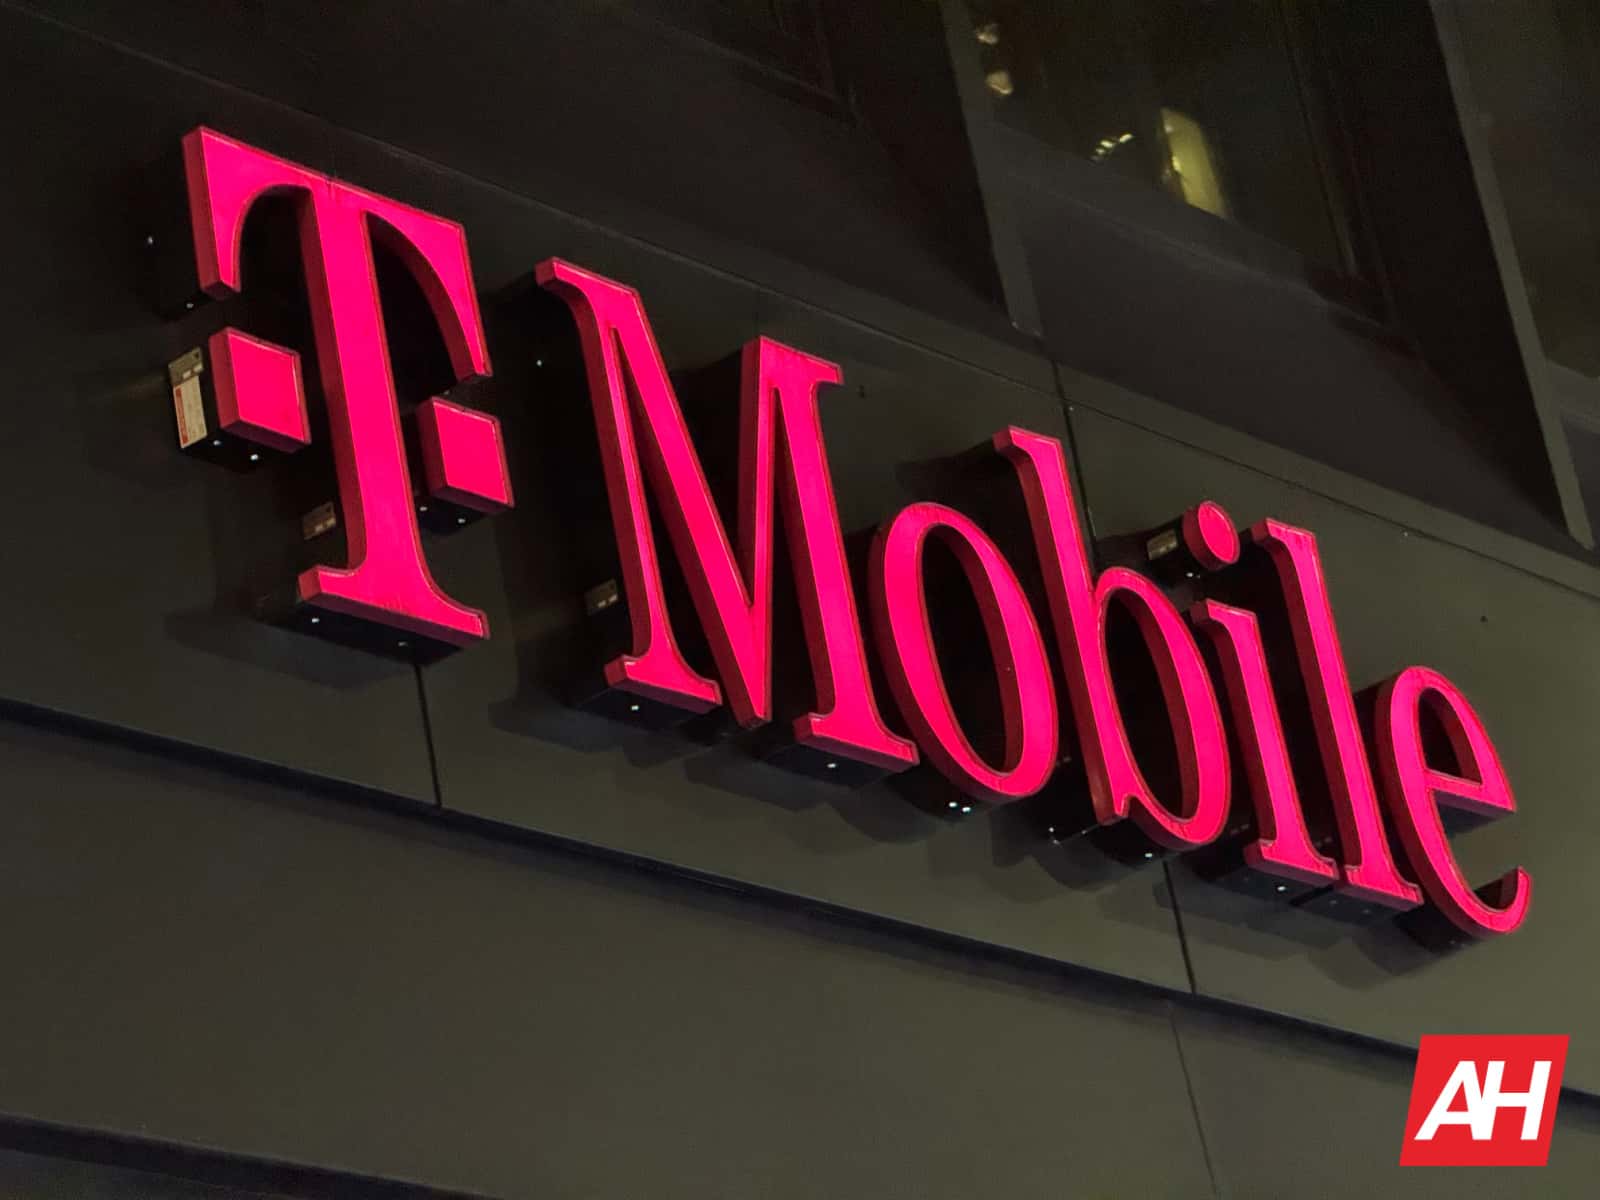 Un hombre enfrentó una enorme factura de T-Mobile de 143.000 dólares después de un viaje al extranjero